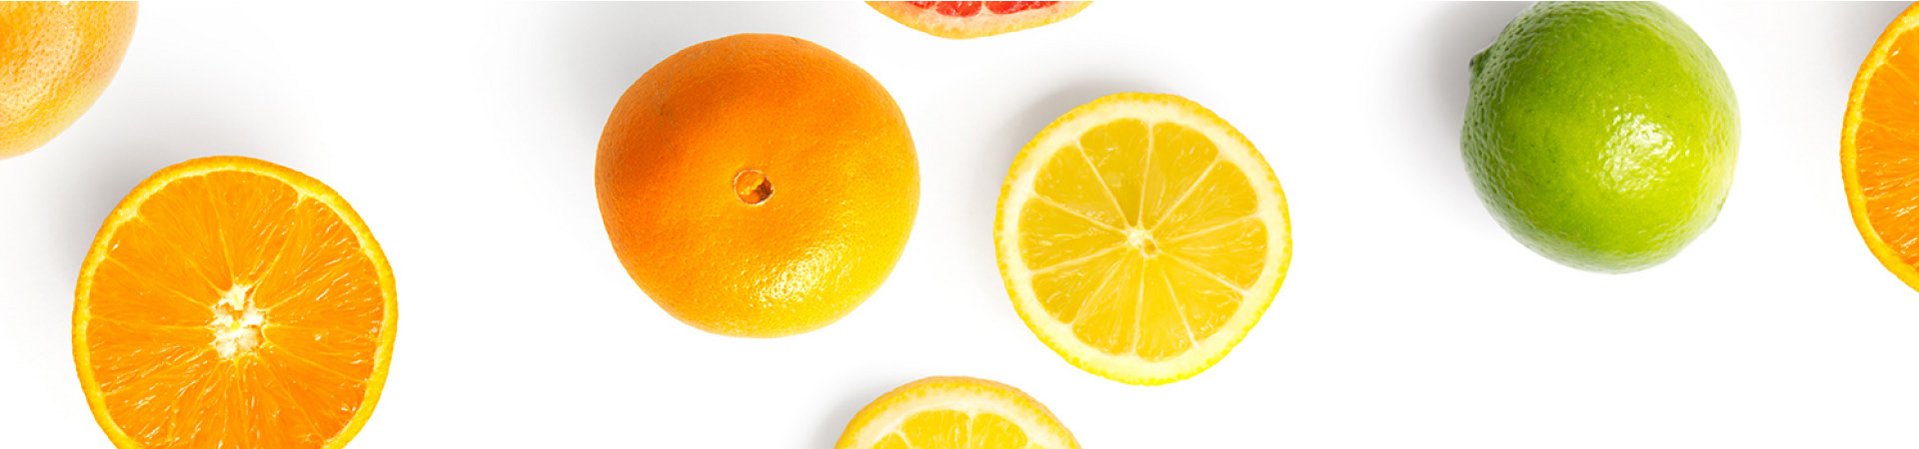 [Translate to Englisch:] Orangen, Zitronen und Limetten auf weißem Hintergrund